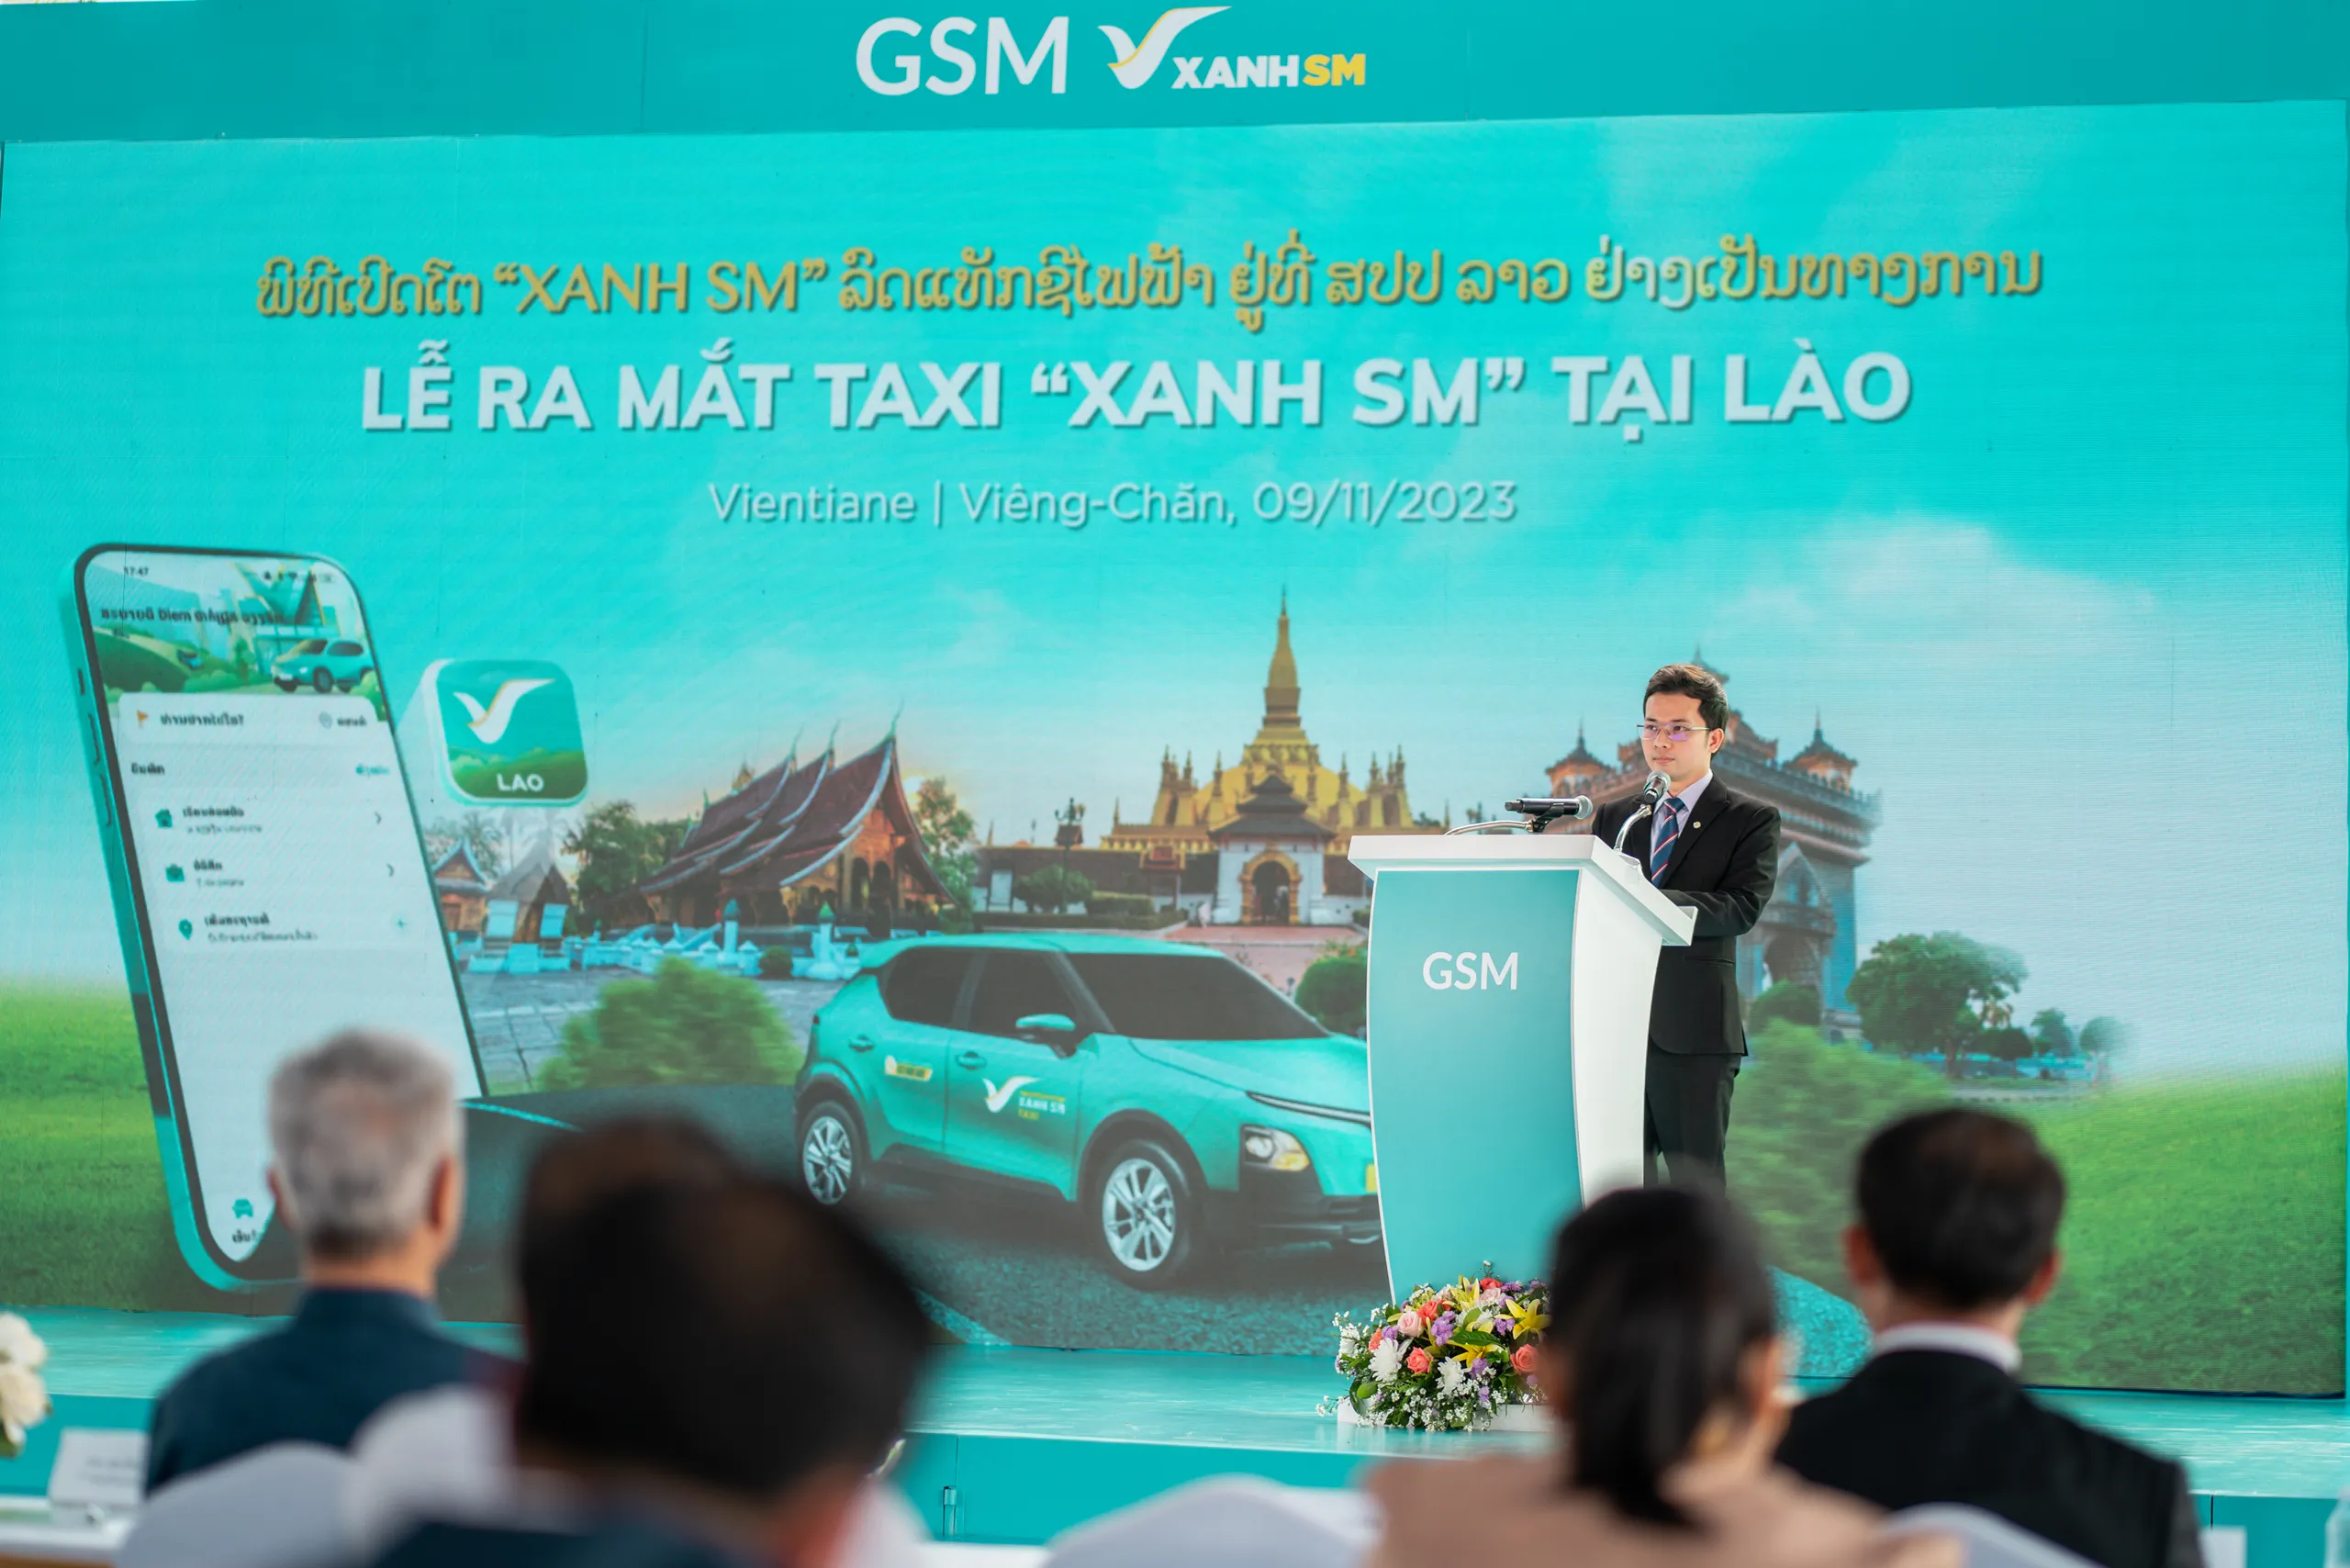 Taxi điện Xanh SM Lào bắt đầu hoạt động, tạo cơ hội việc làm cho hàng nghìn lao động địa phương